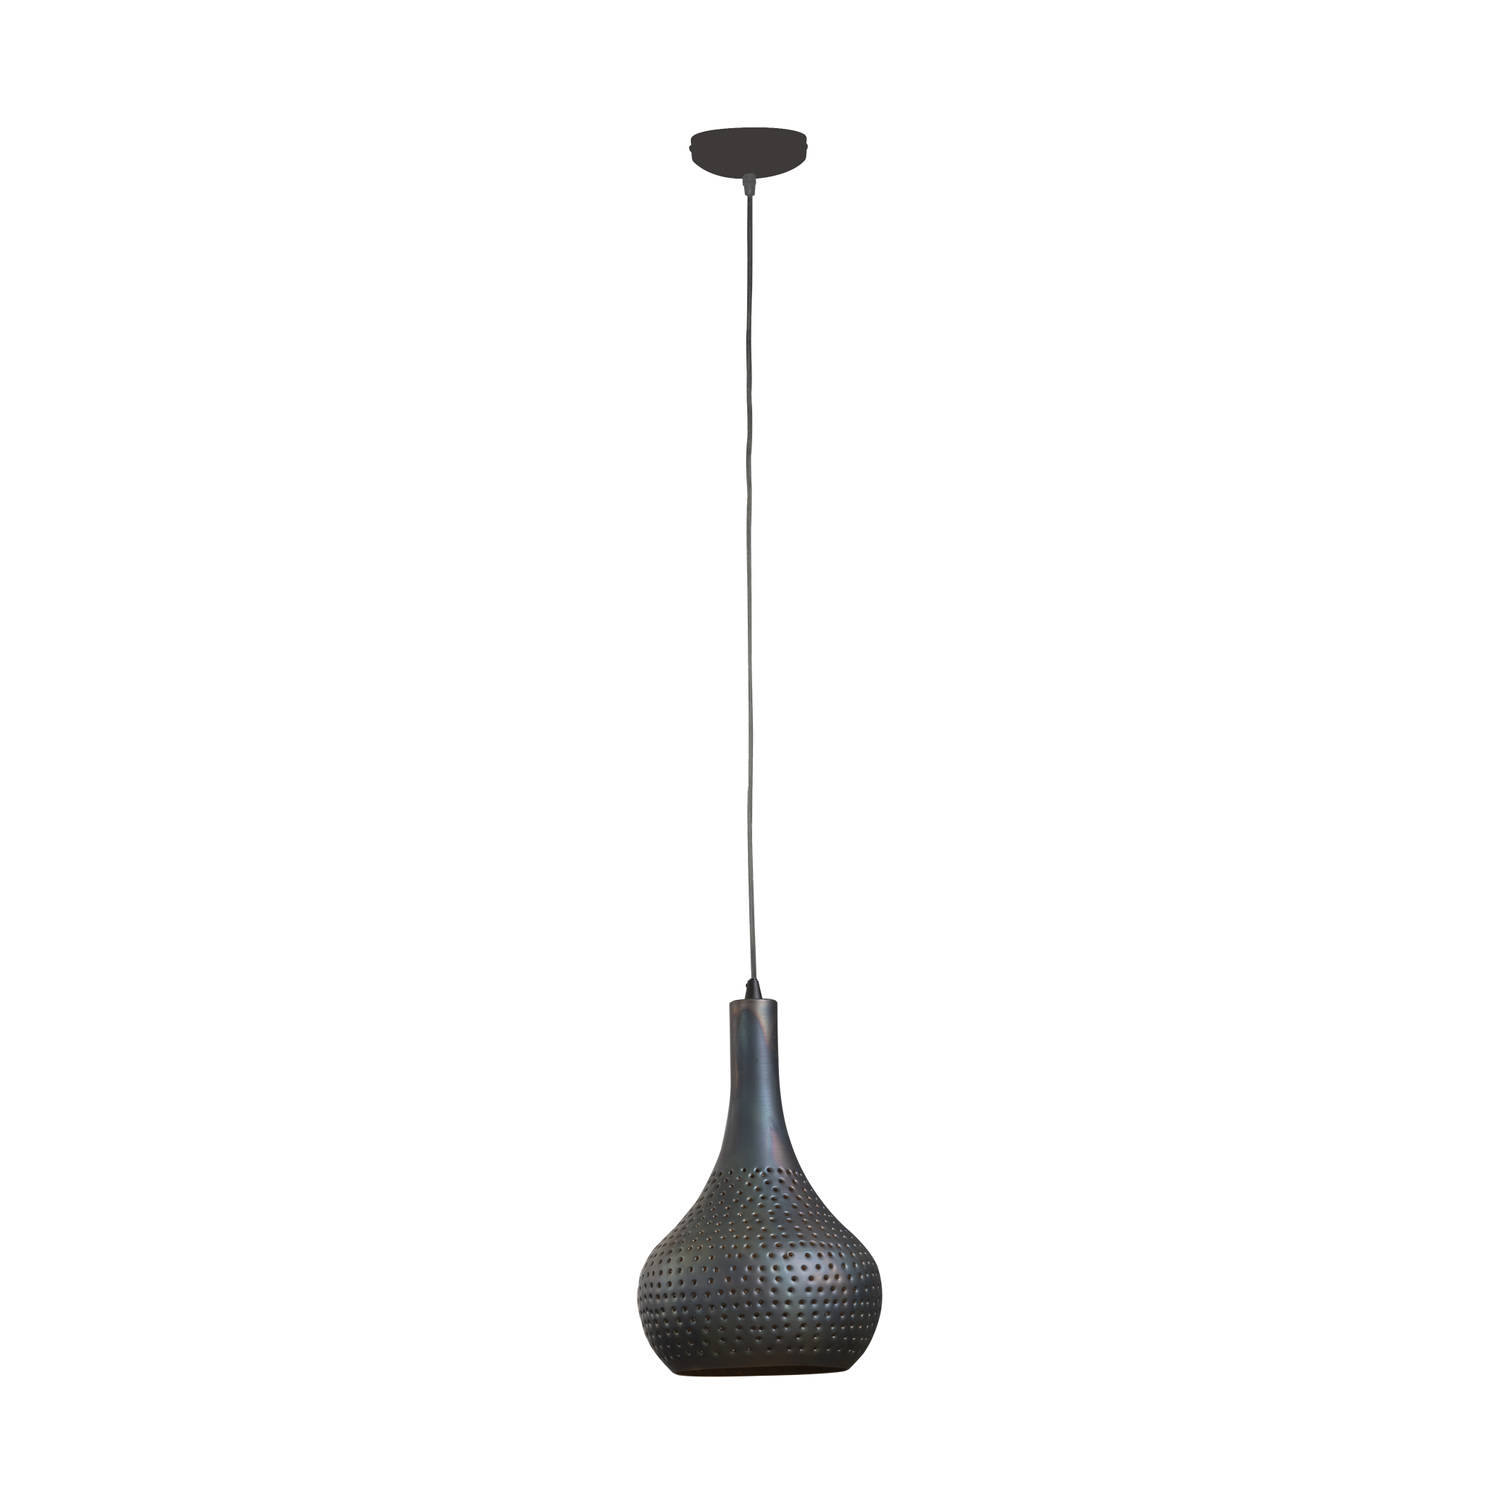 Hanglamp 1-Lichtbron - Kegel - Zwart/Bruin - Lamp Industry Concrete - Giga Meubel